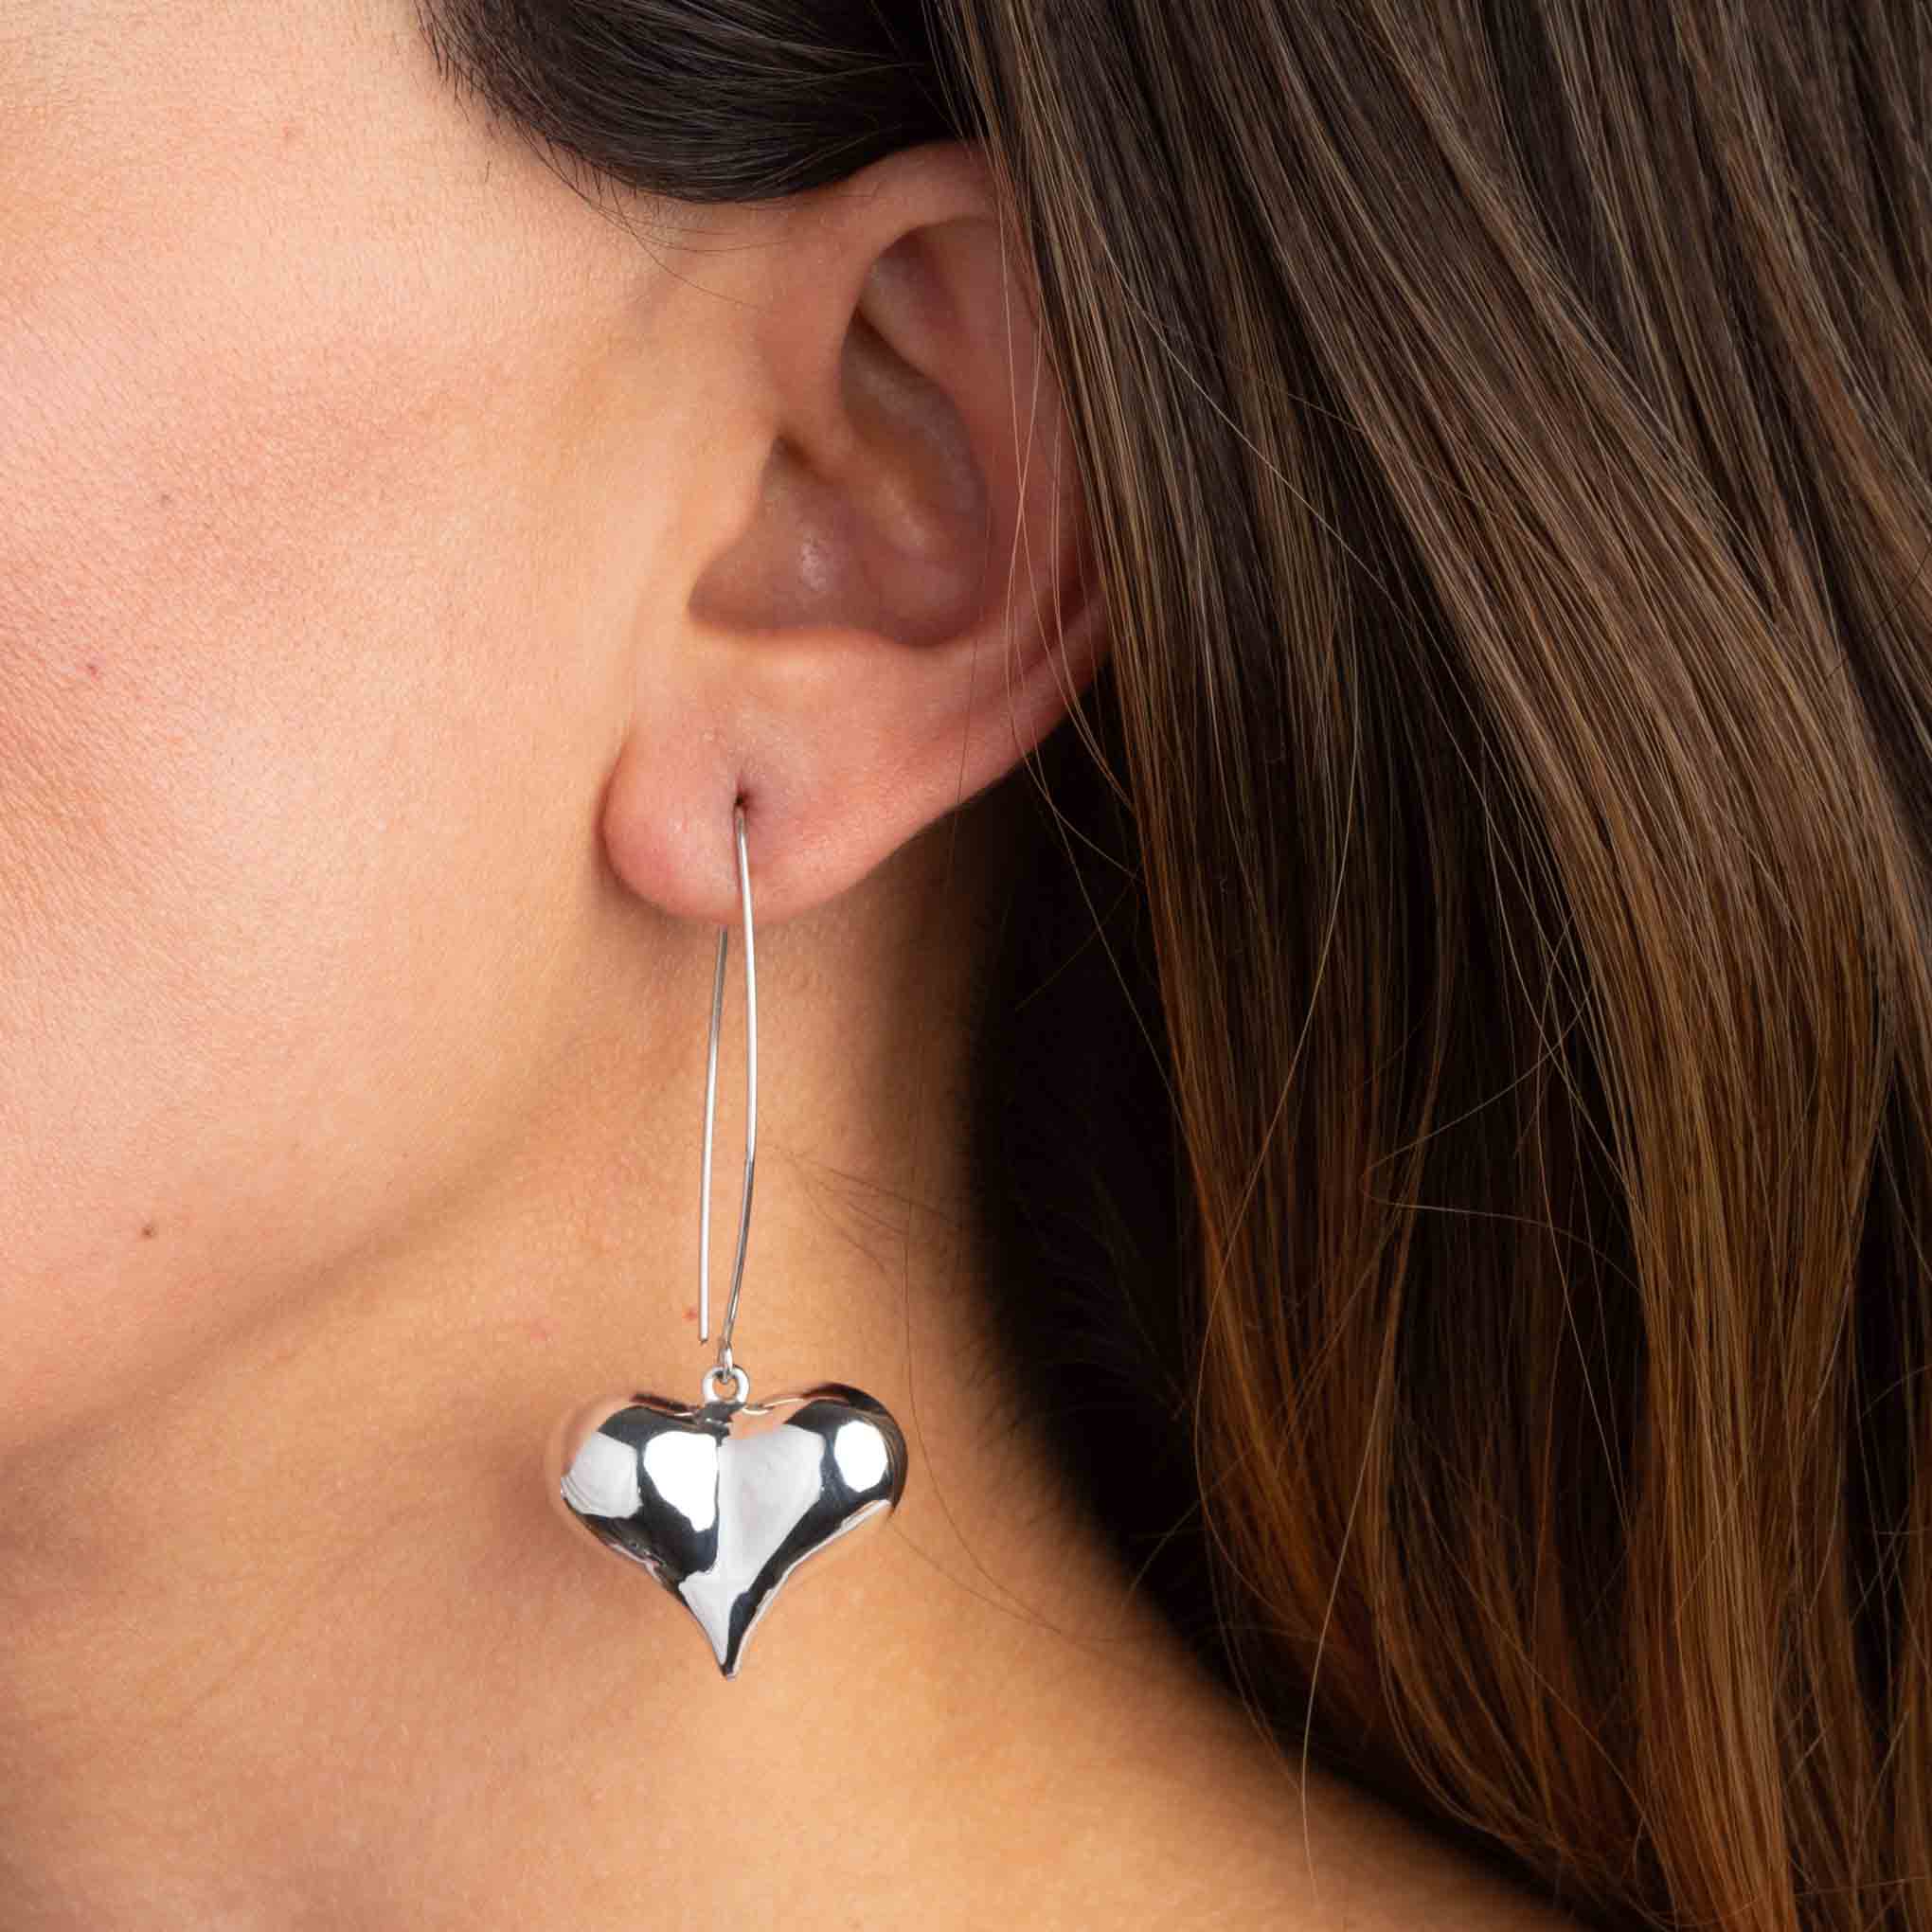 Silver earrings heart globe